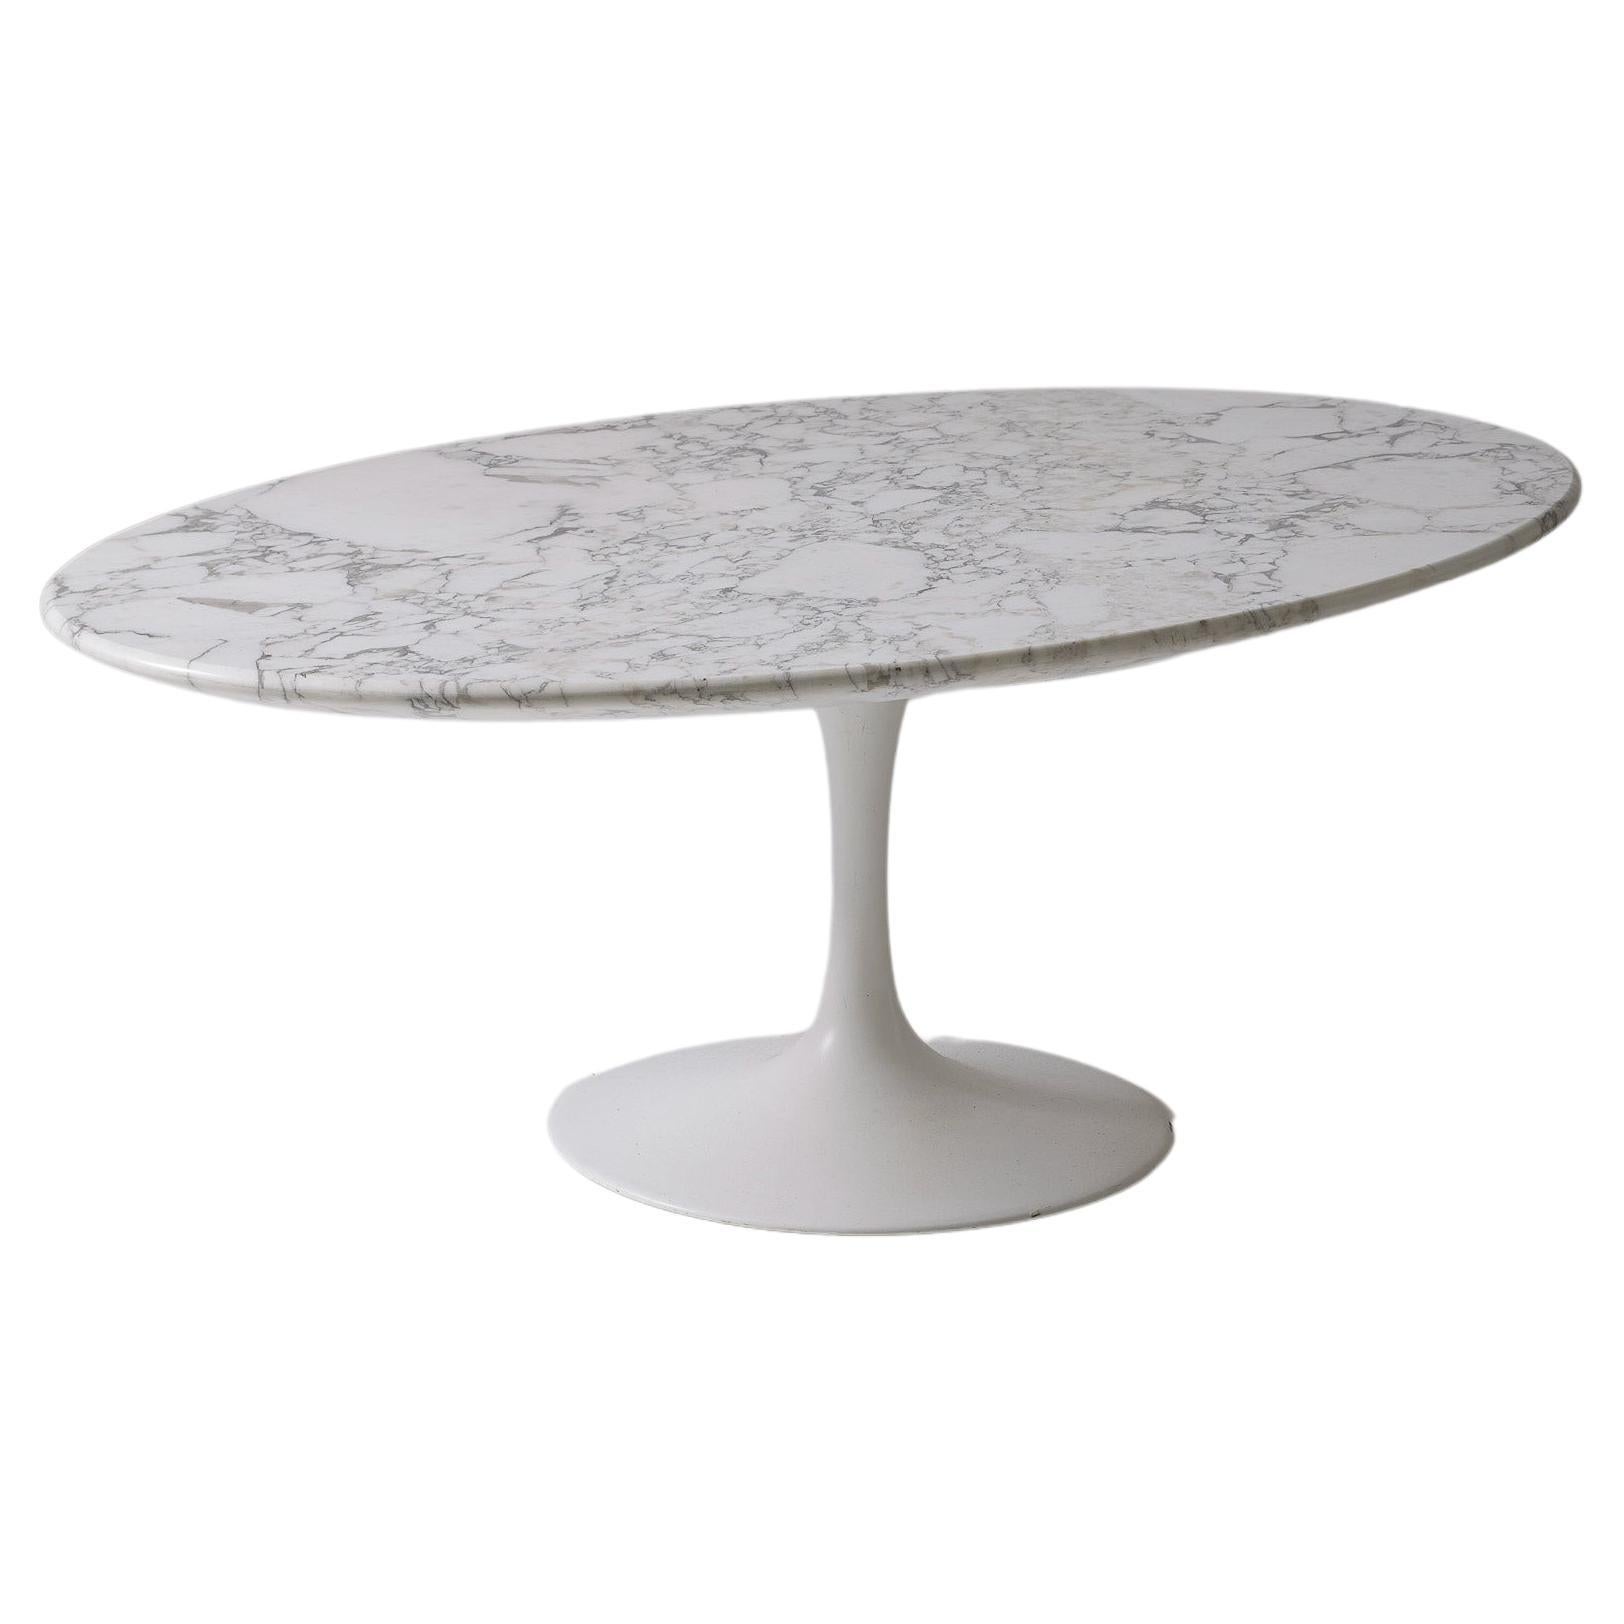 Eero Saarinen Pedestal Table For Sale